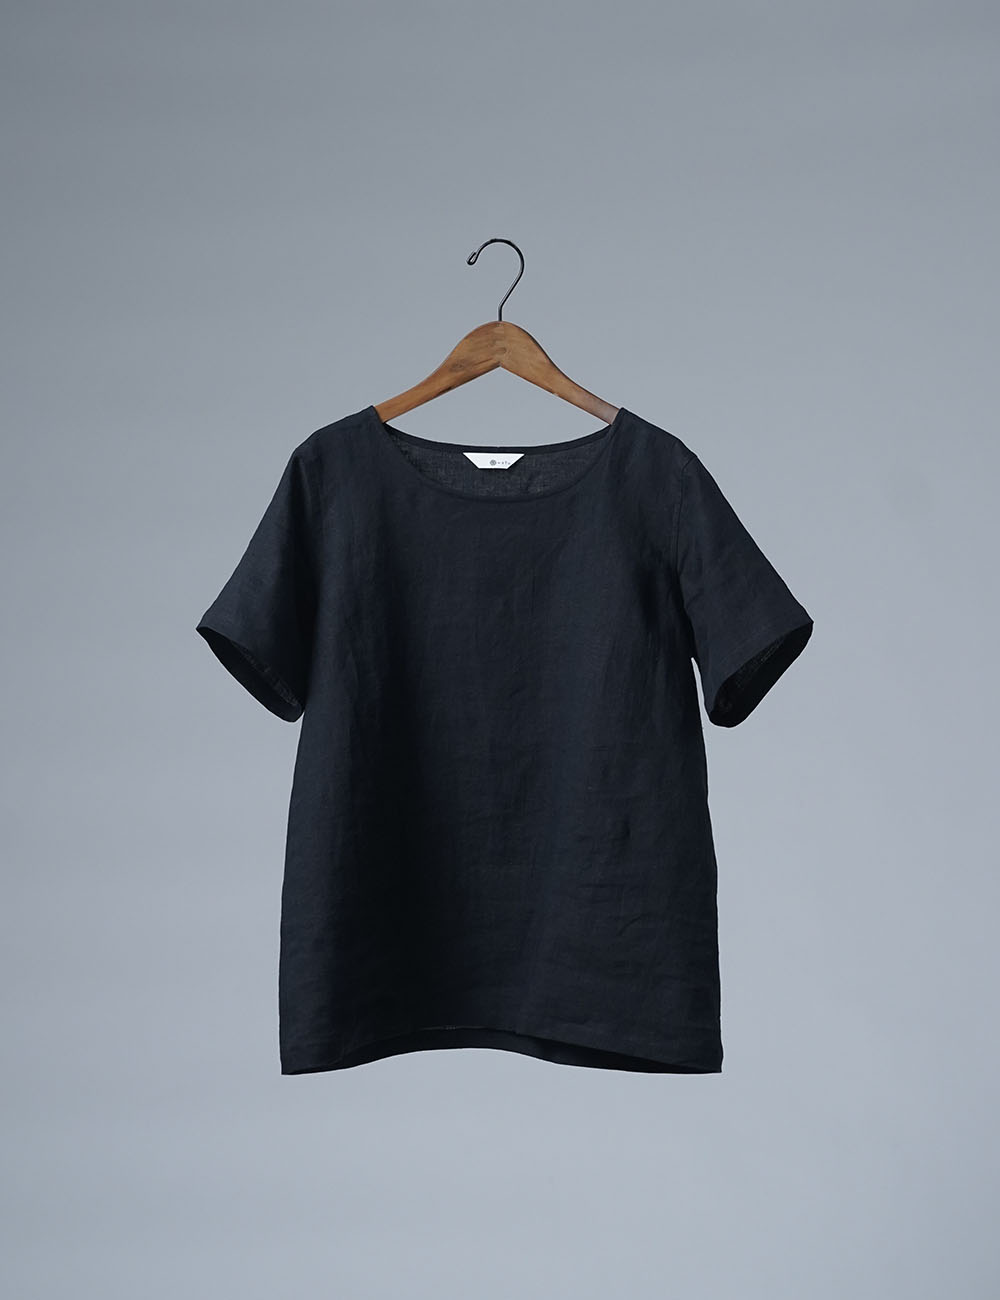 【wafu】雅亜麻リネンTシャツ インナー リネンブラウス ペチコートにも 半袖 丸首 T-shirt /黒色 p015a-bck1